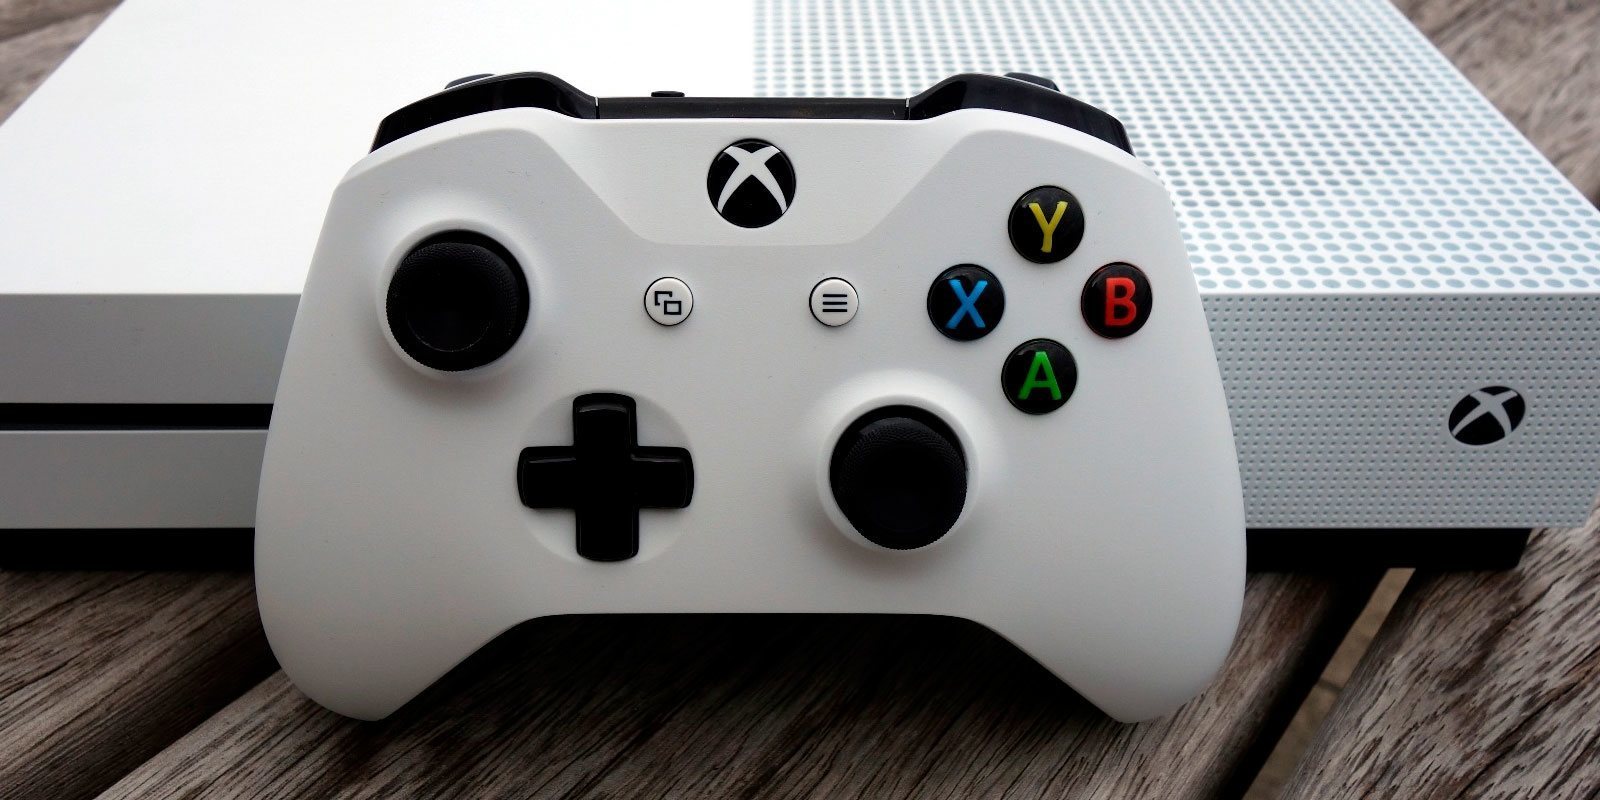 Xbox One S tendrá una edición especial inspirada en 'Coco' en Estados Unidos